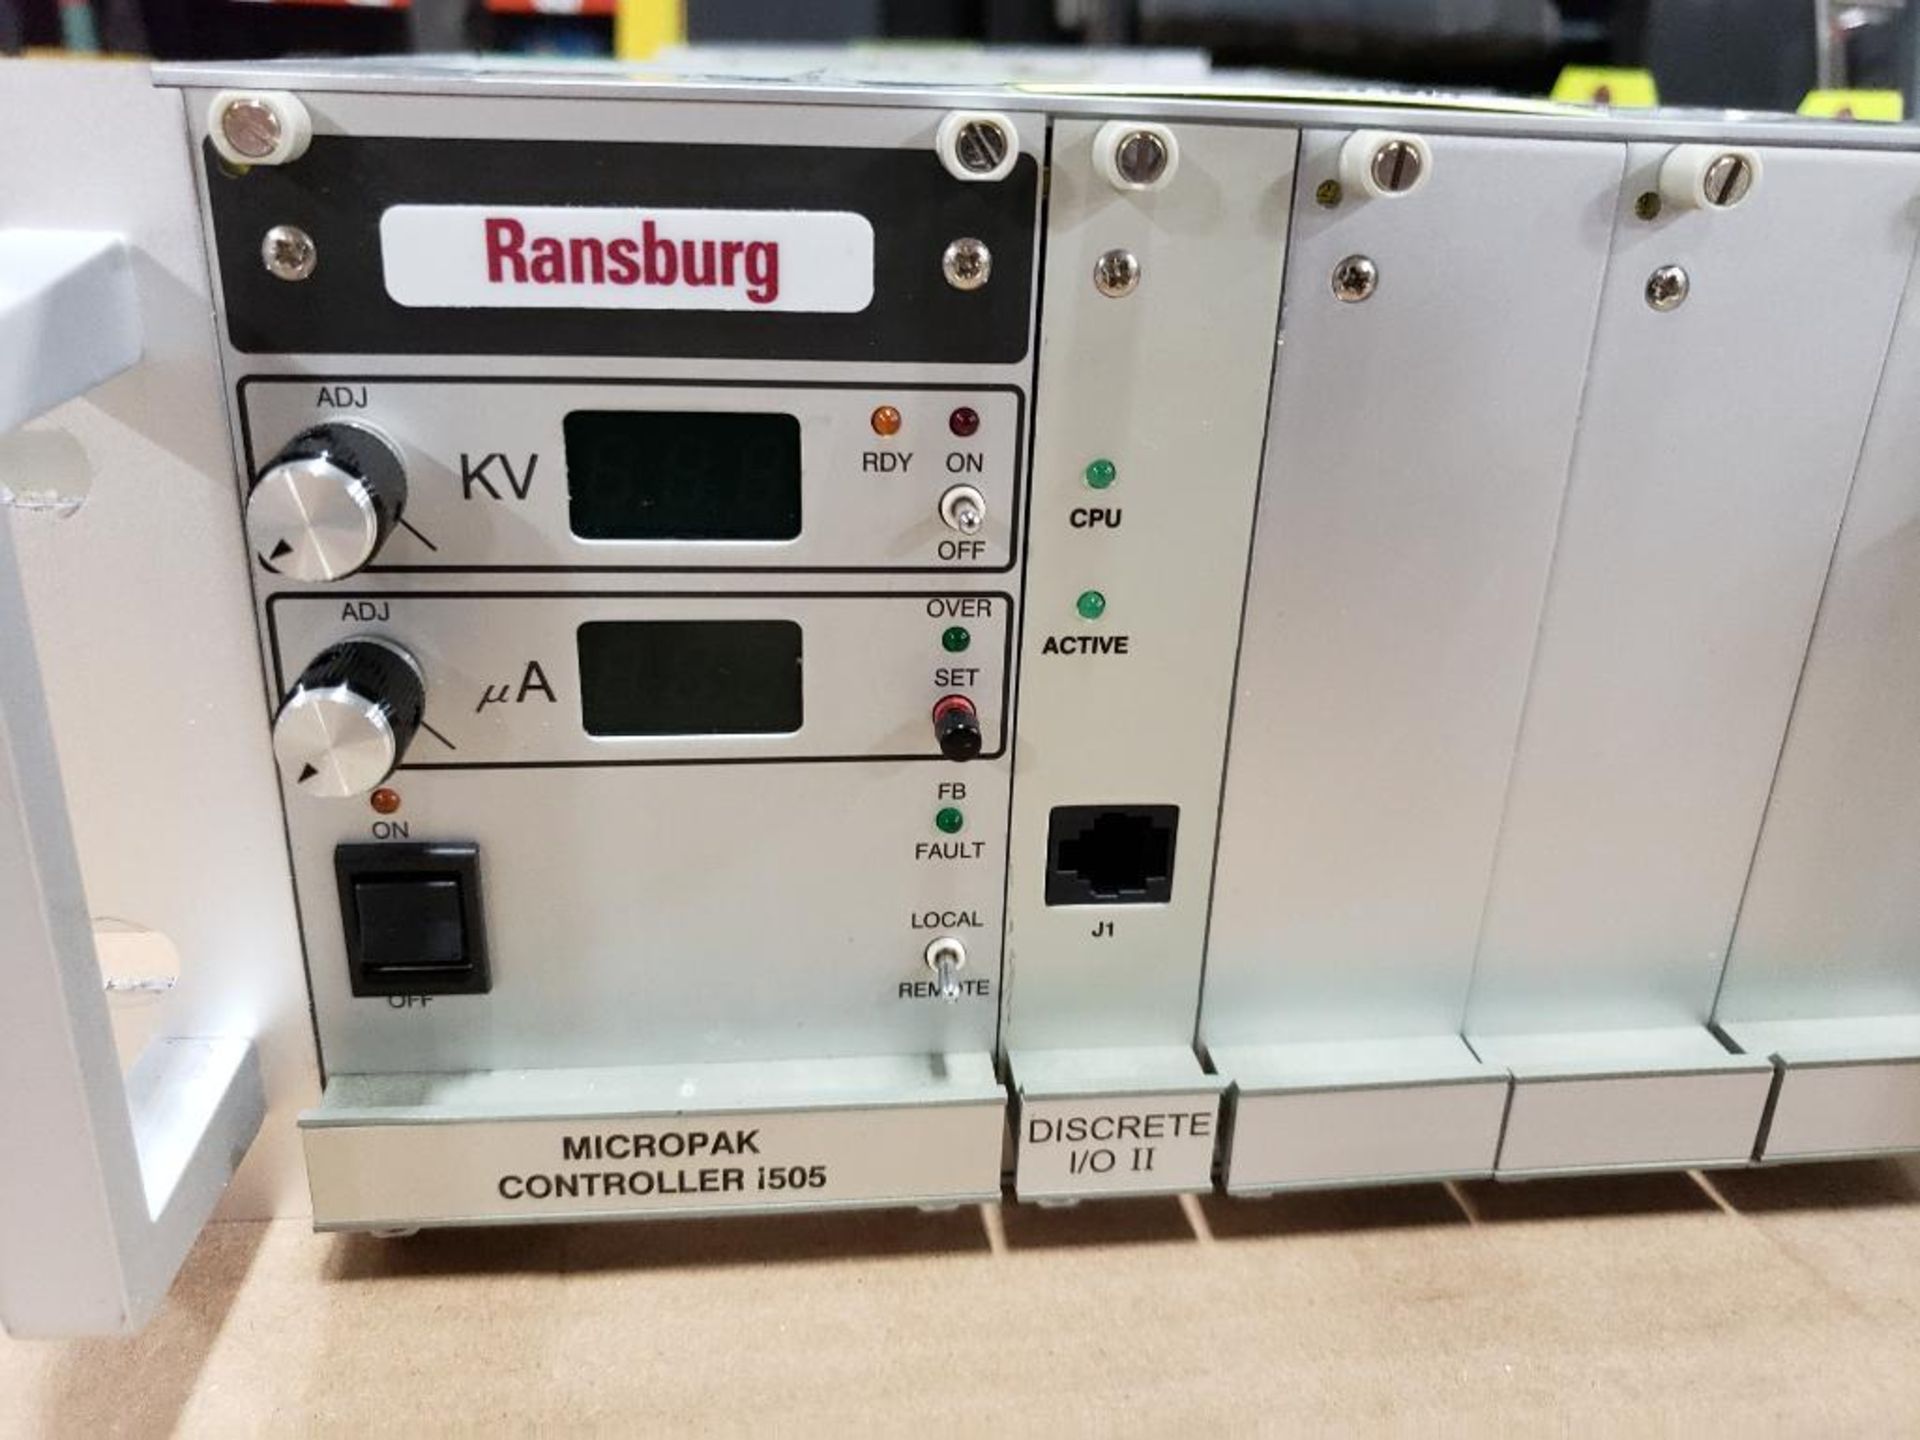 Ransburg 1505 Micropak Controller. Discrete I/O II Rack. - Image 2 of 4